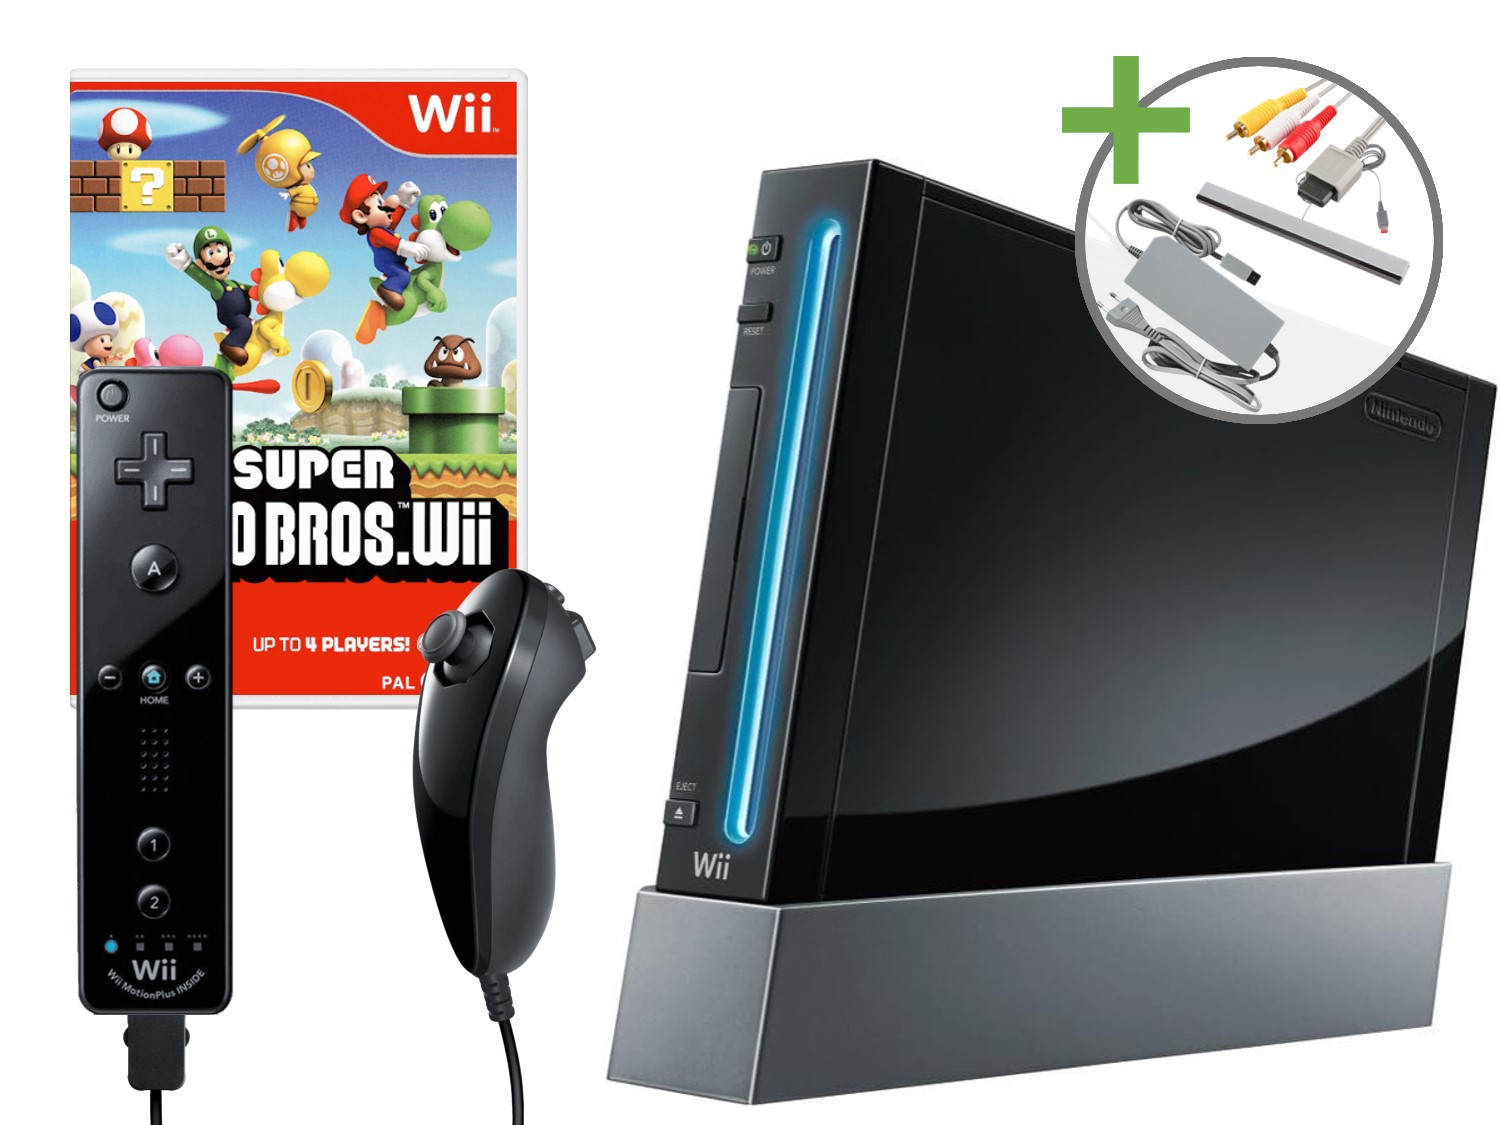 Nintendo Wii Starter Pack - New Super Mario Bros. Wii Edition - Wii Hardware